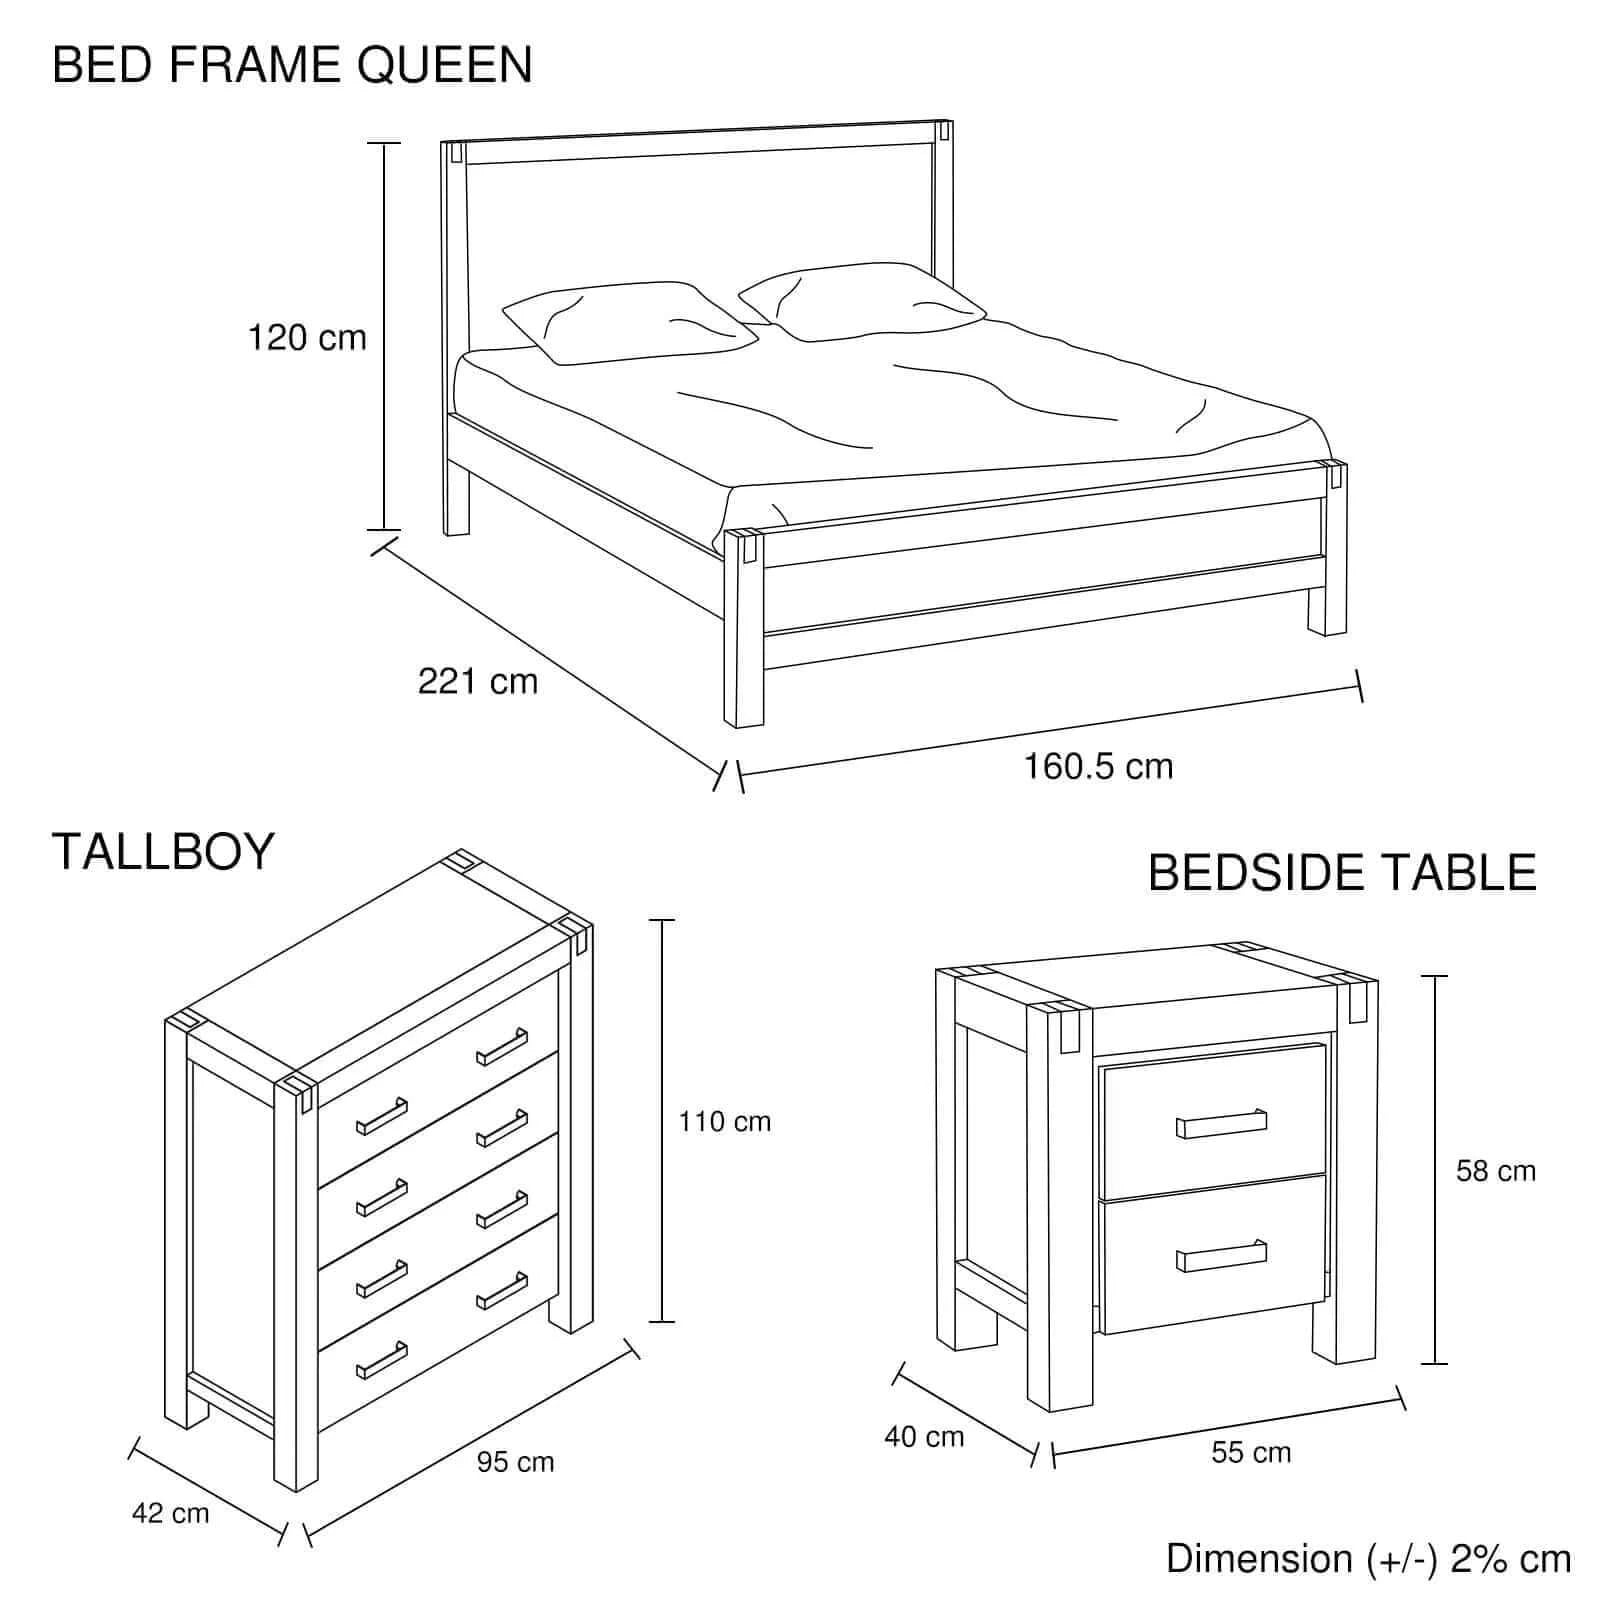 Buy Your Solid Wood Veneered Furniture Bedroom Set-Upinteriors